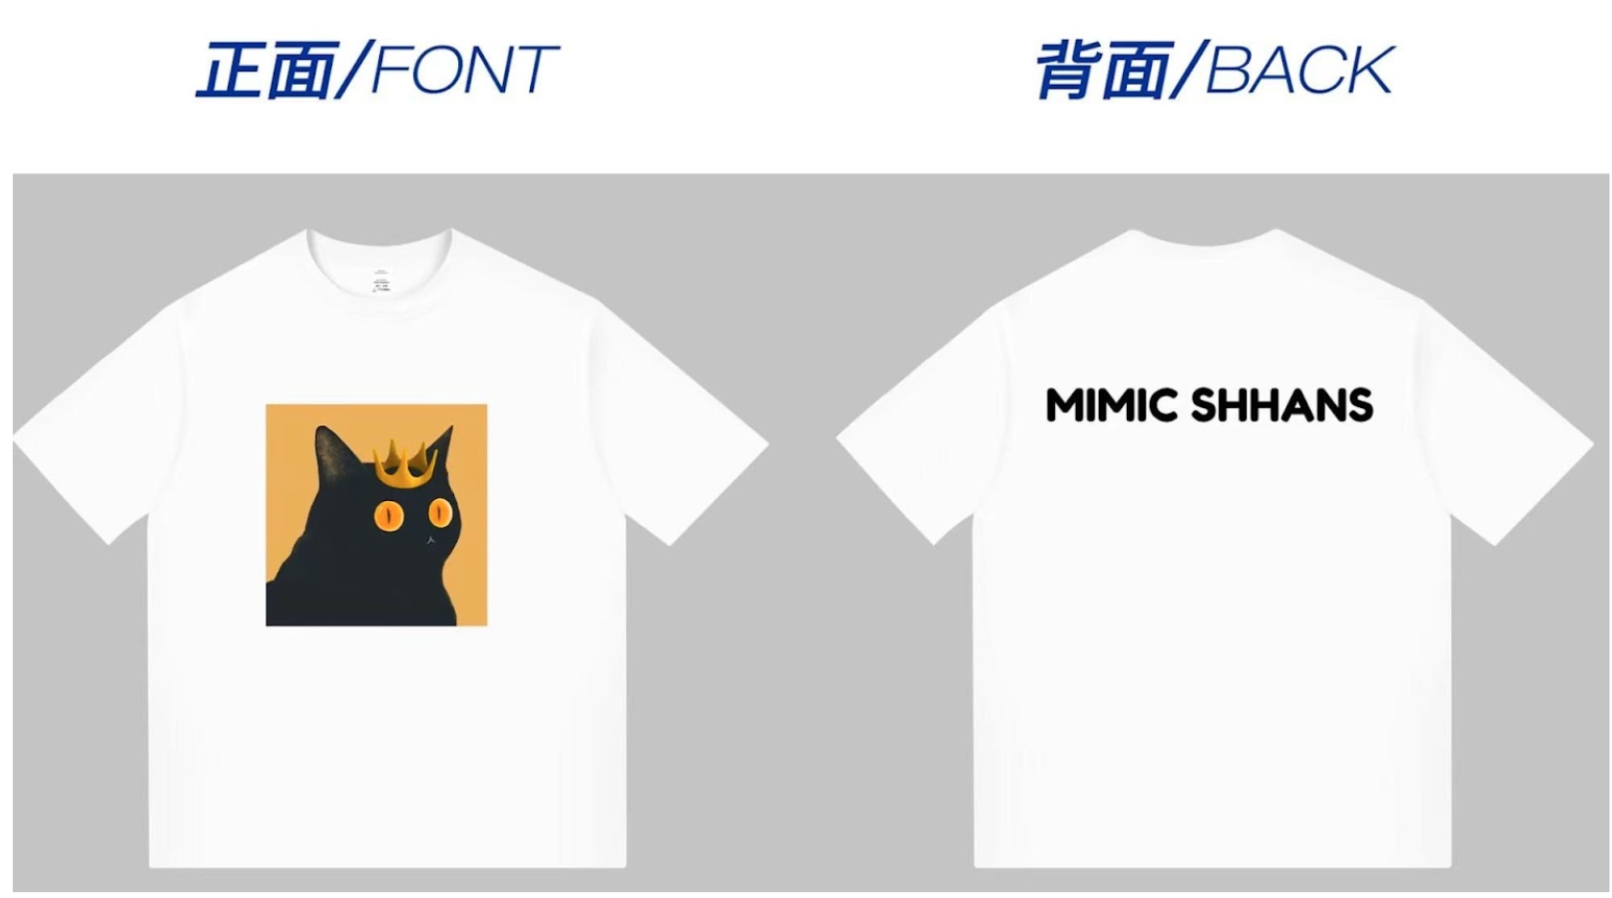 Mimic Shhans’ T-shirt